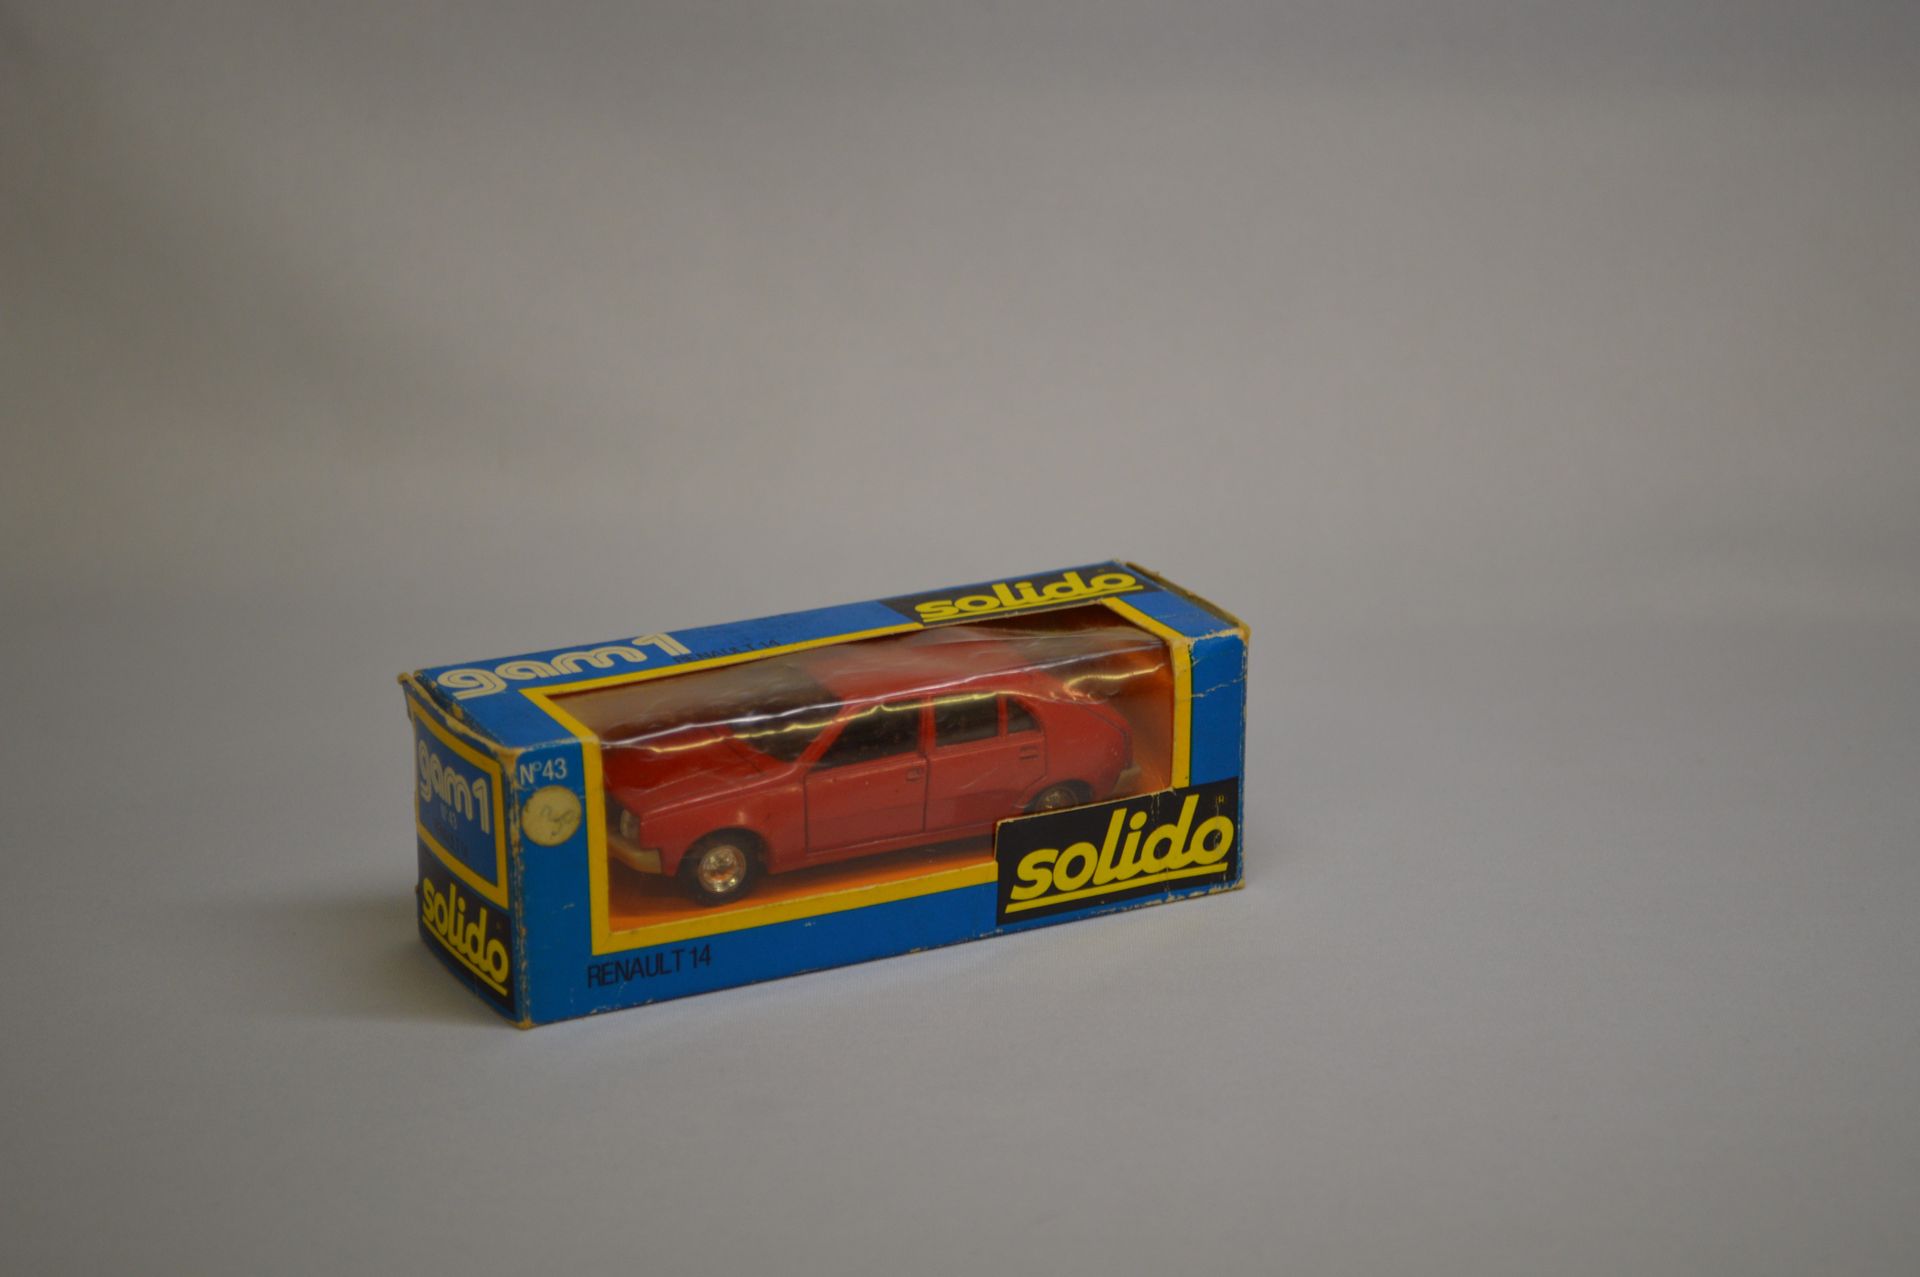 Null SOLIDO - GAM 1 - Auto da turismo : Renault 14, n°43, rossa.

Scatola origin&hellip;